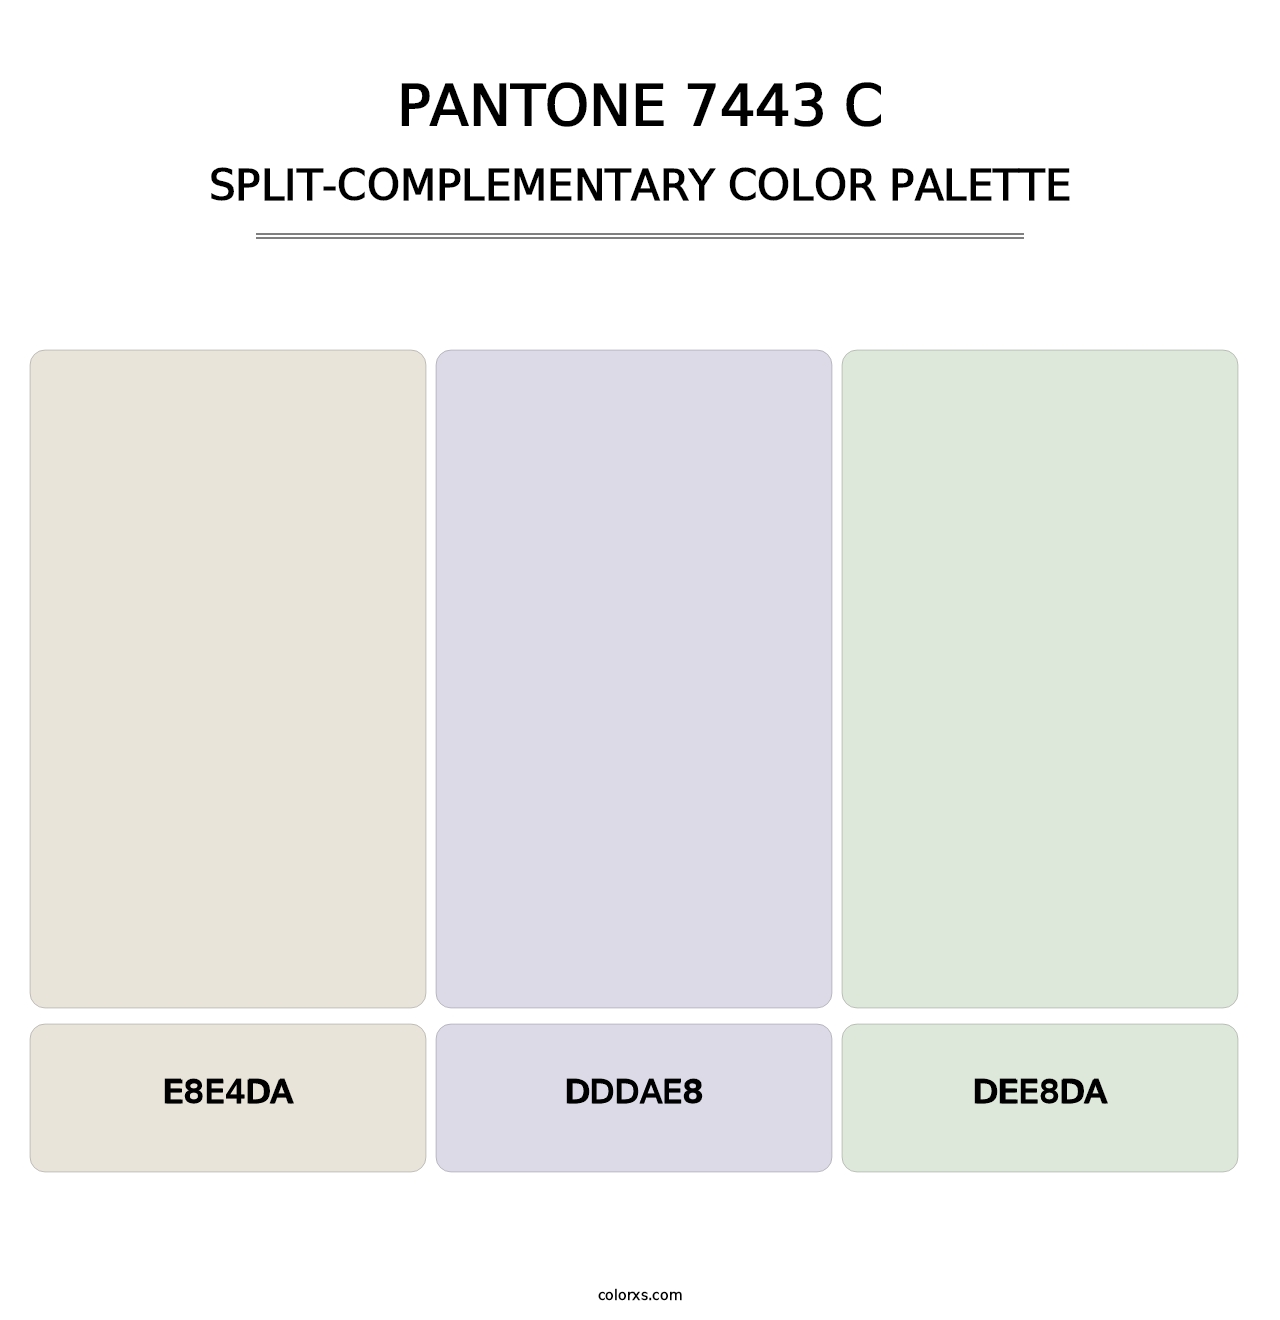 PANTONE 7443 C - Split-Complementary Color Palette